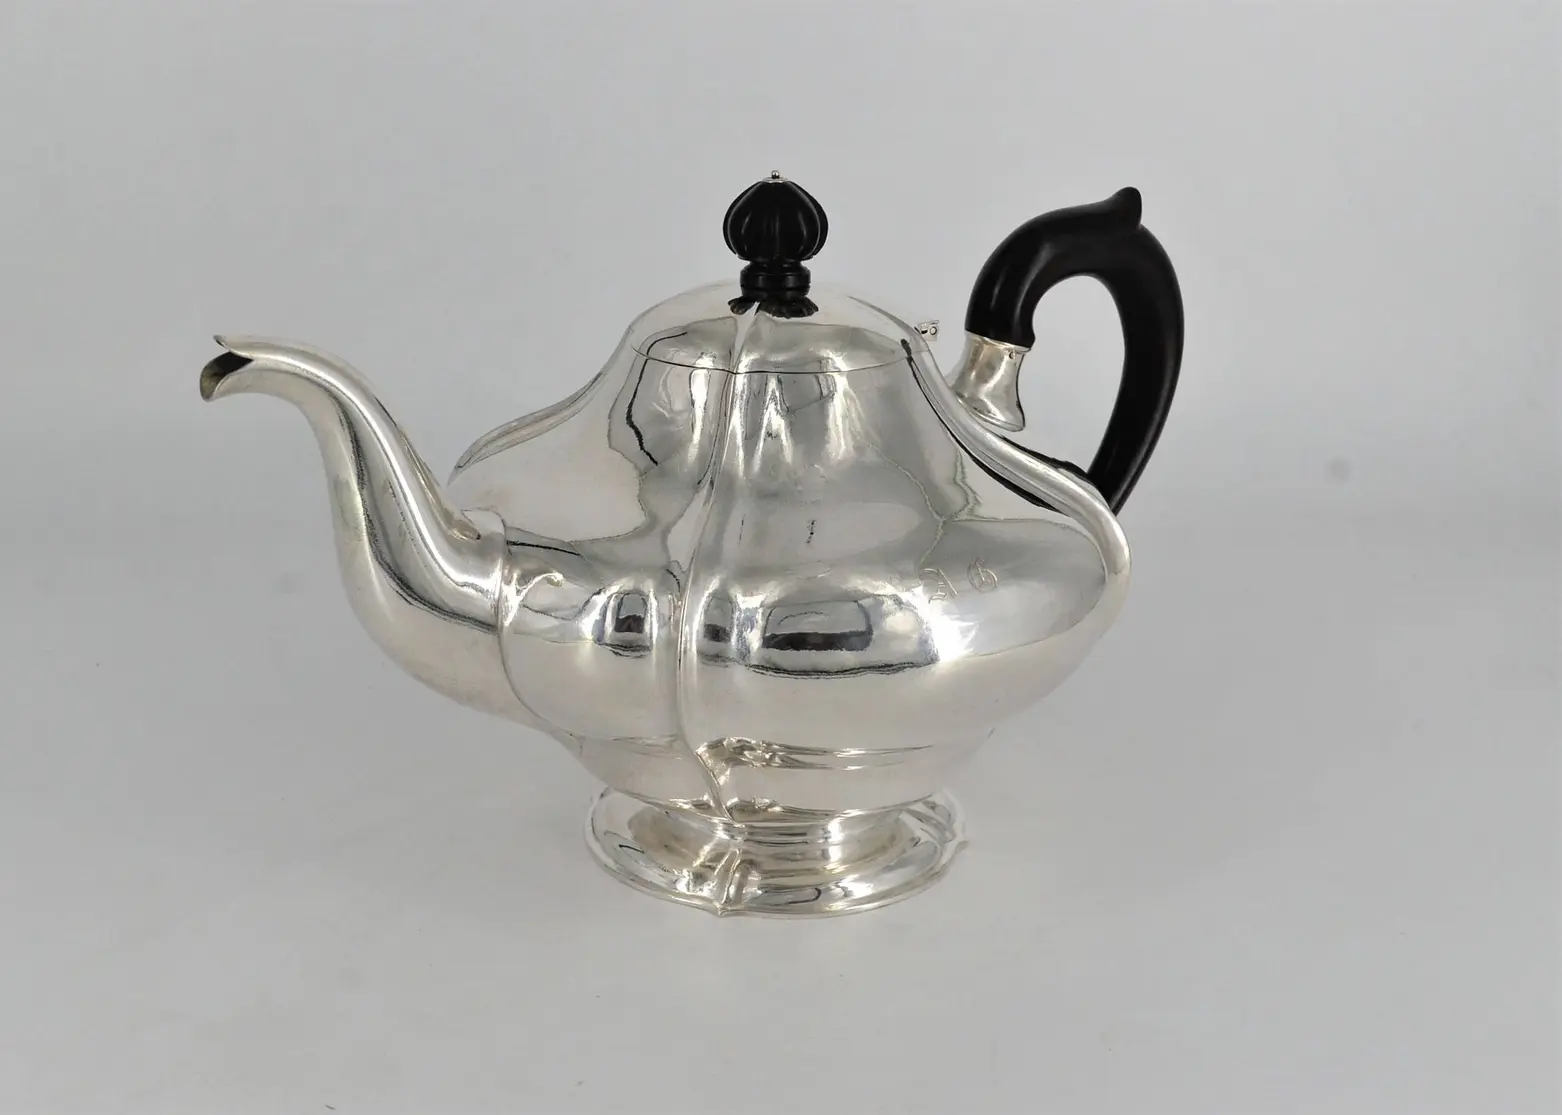 Large tea pot